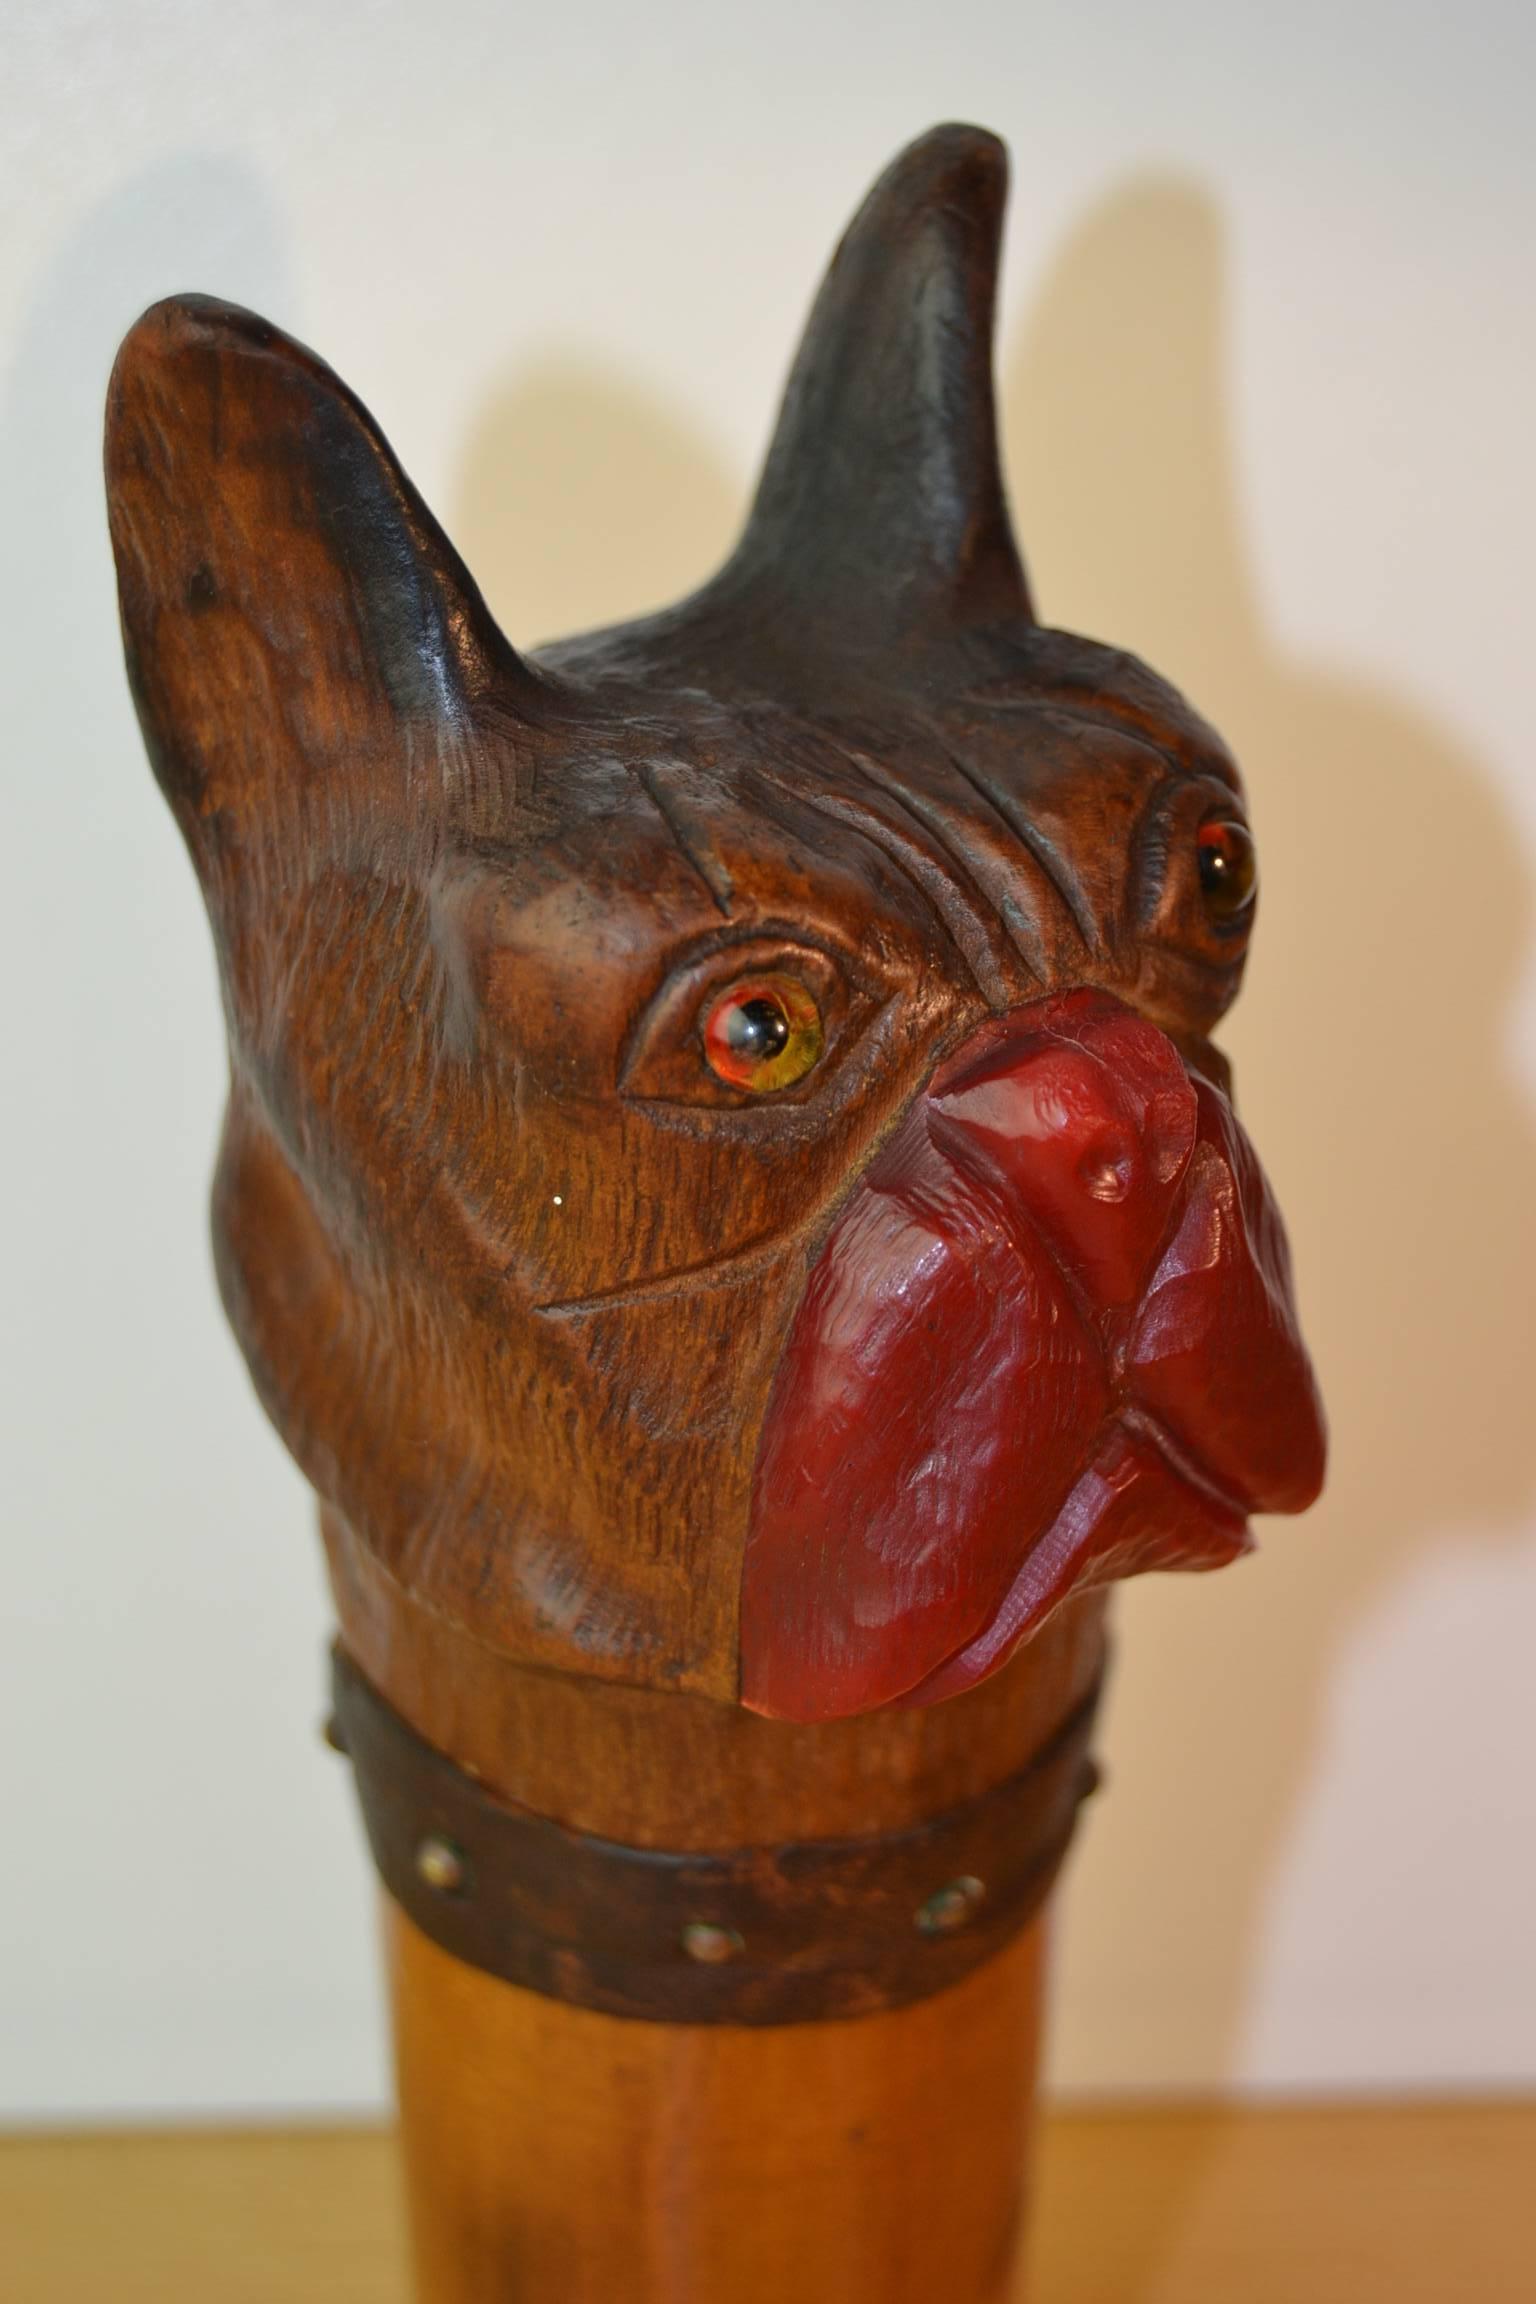 Tête de bouledogue unique en bois sculpté pour manche de canne antique.
Sculpture figurative de chien en bois ancien de style Folk Art du début du 20ème siècle. 
Nez en bakélite rouge, yeux en verre et collier en cuir avec clous en